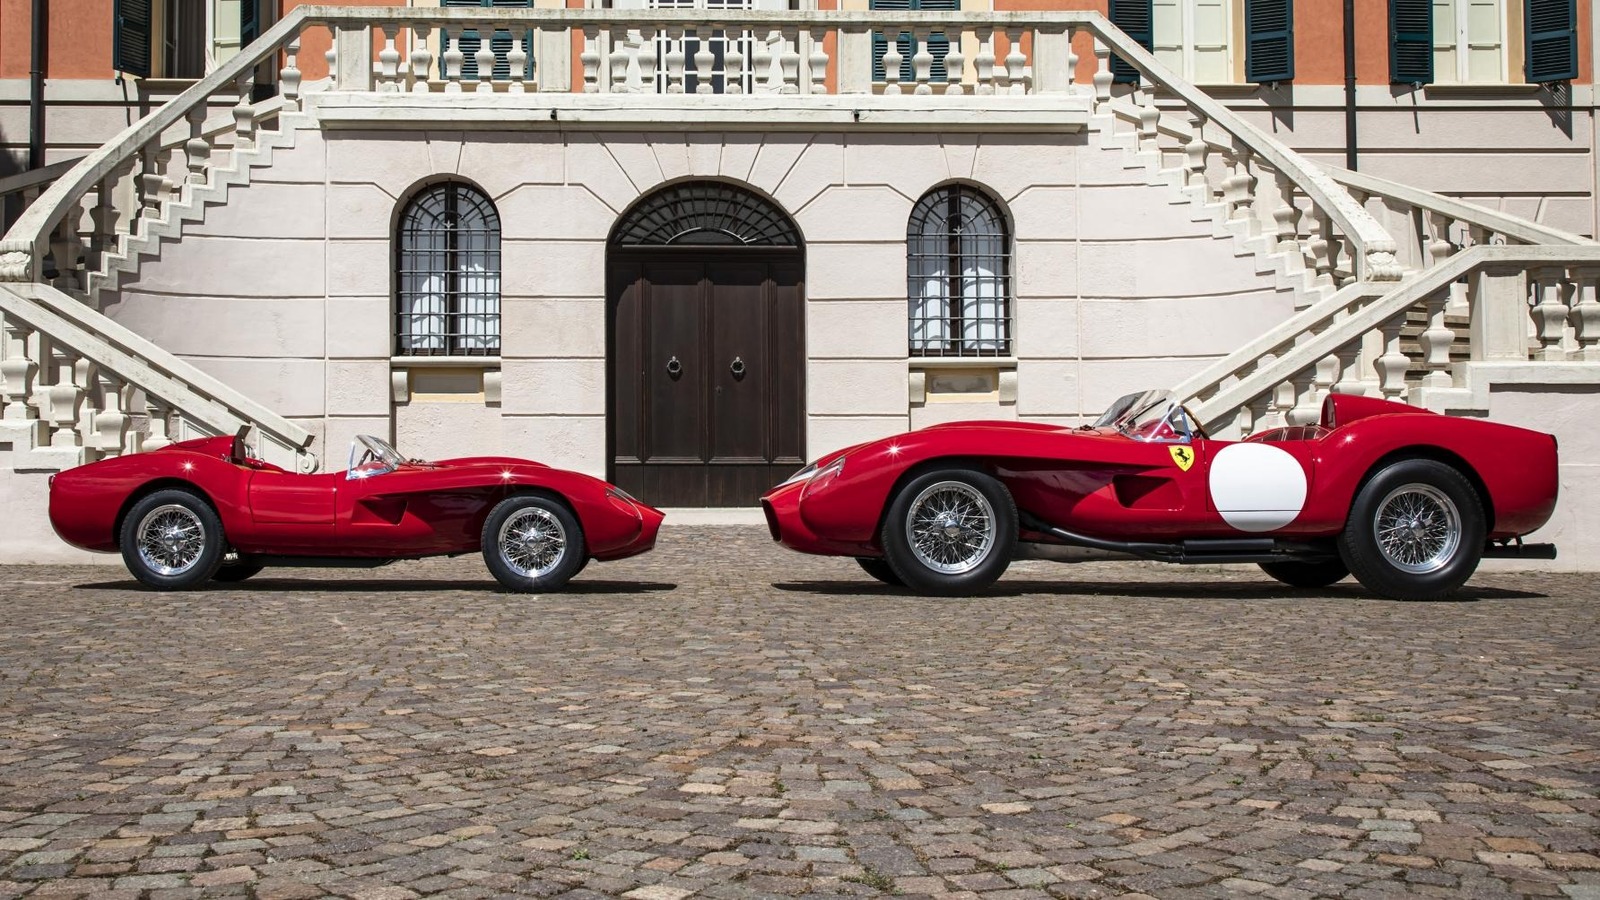 The Size Of This Unique Ferrari 250 Testa Rossa Replica Isn’t The Strangest Thing